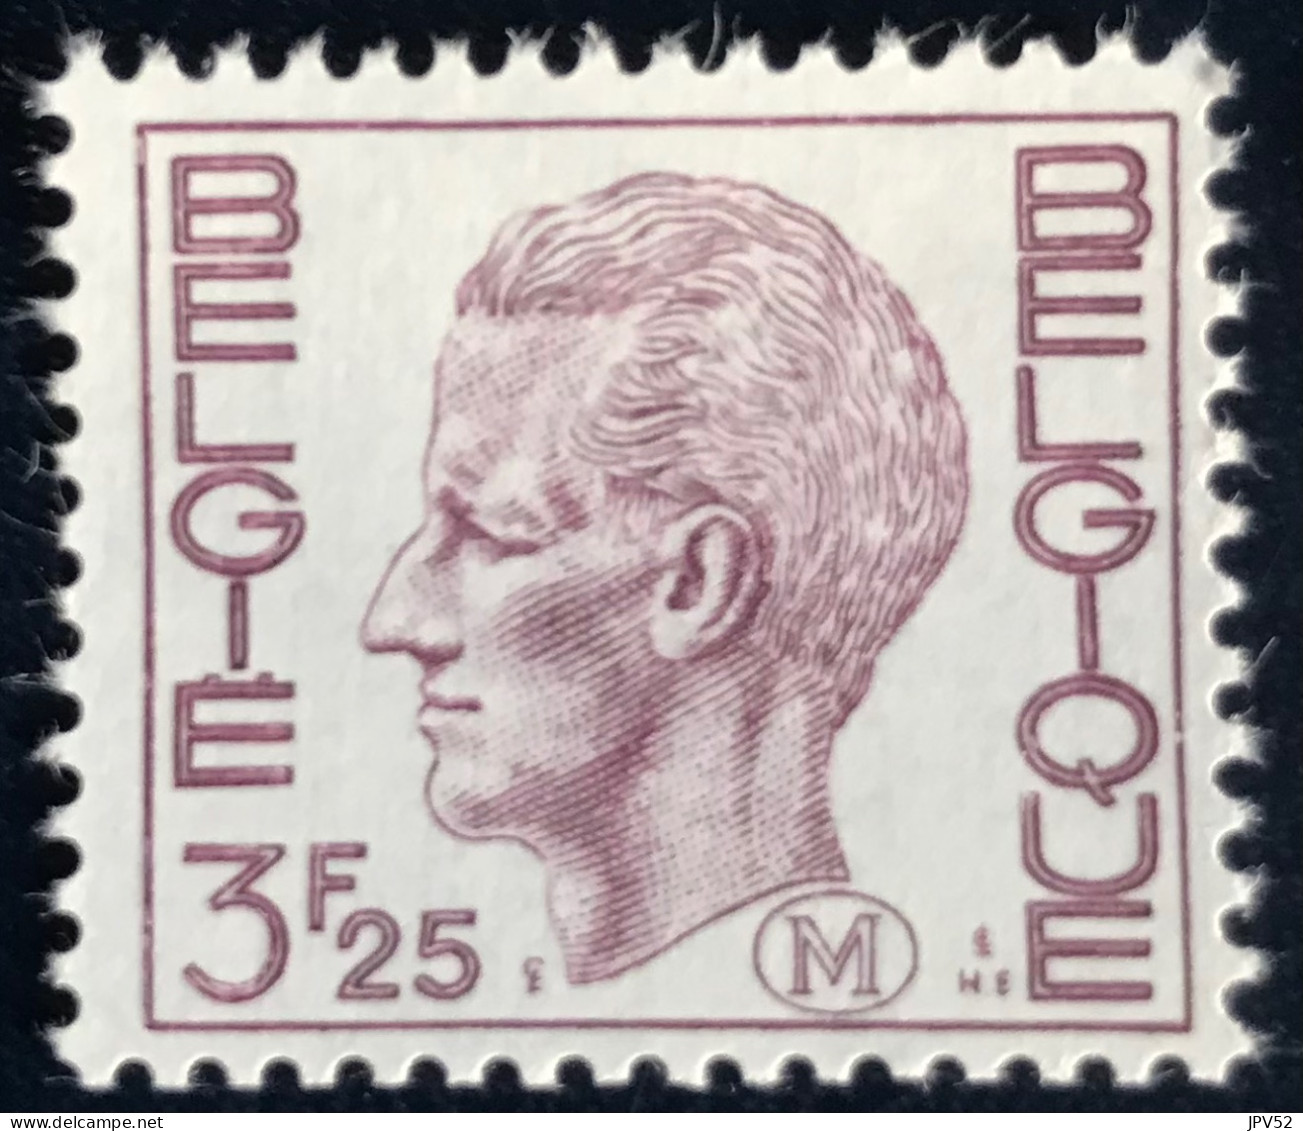 België - Belgique - C18/40 - 1975 - MNH - Michel 5 - Militair - Koning Boudewijn - Briefmarken [M]